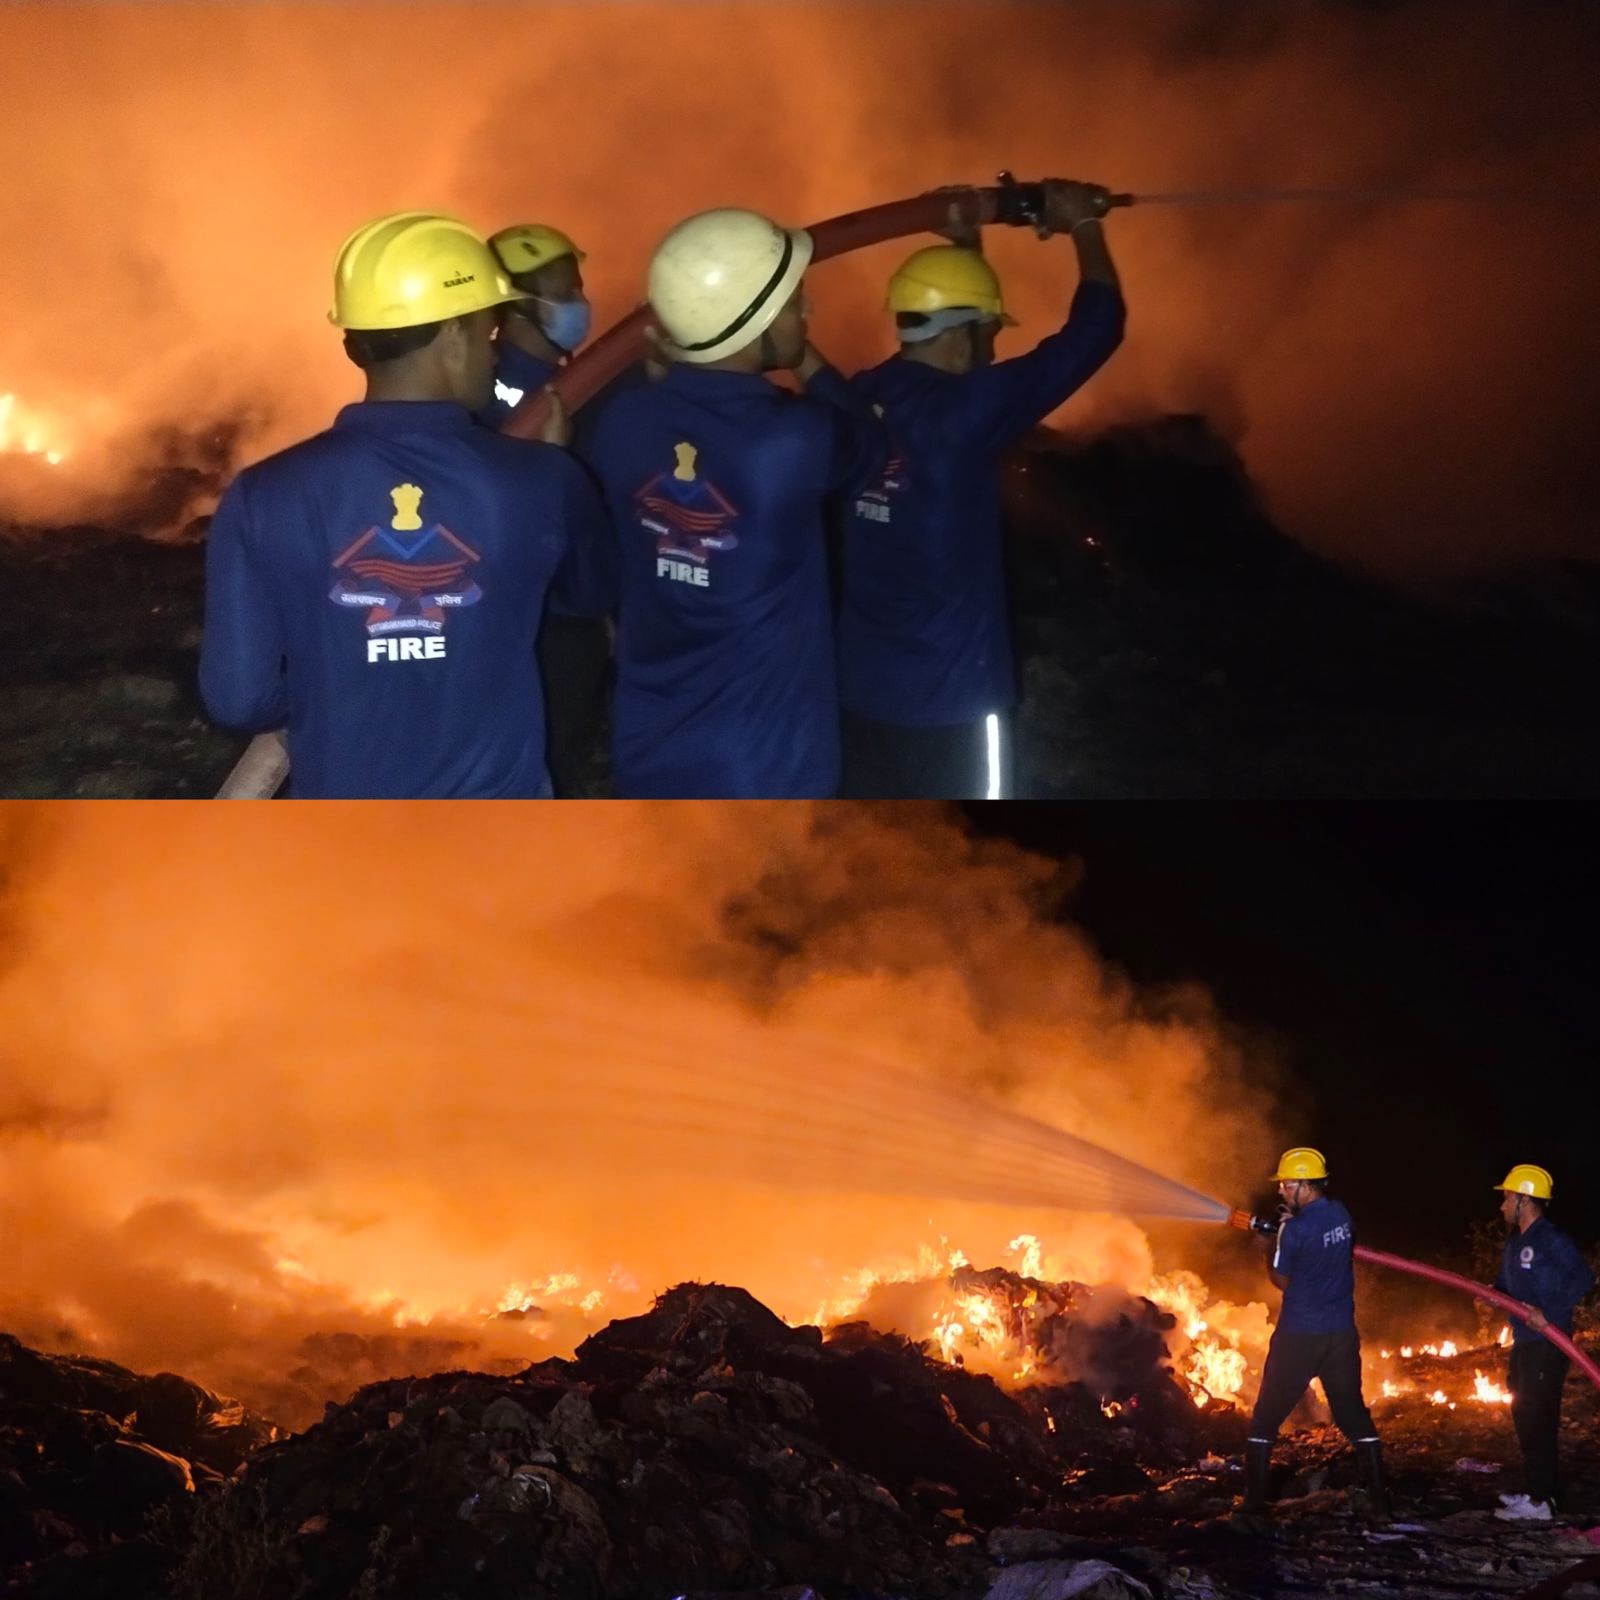 कबाड़ के गोदाम में लगी विकराल आग को फायर टीम ने किया काबू